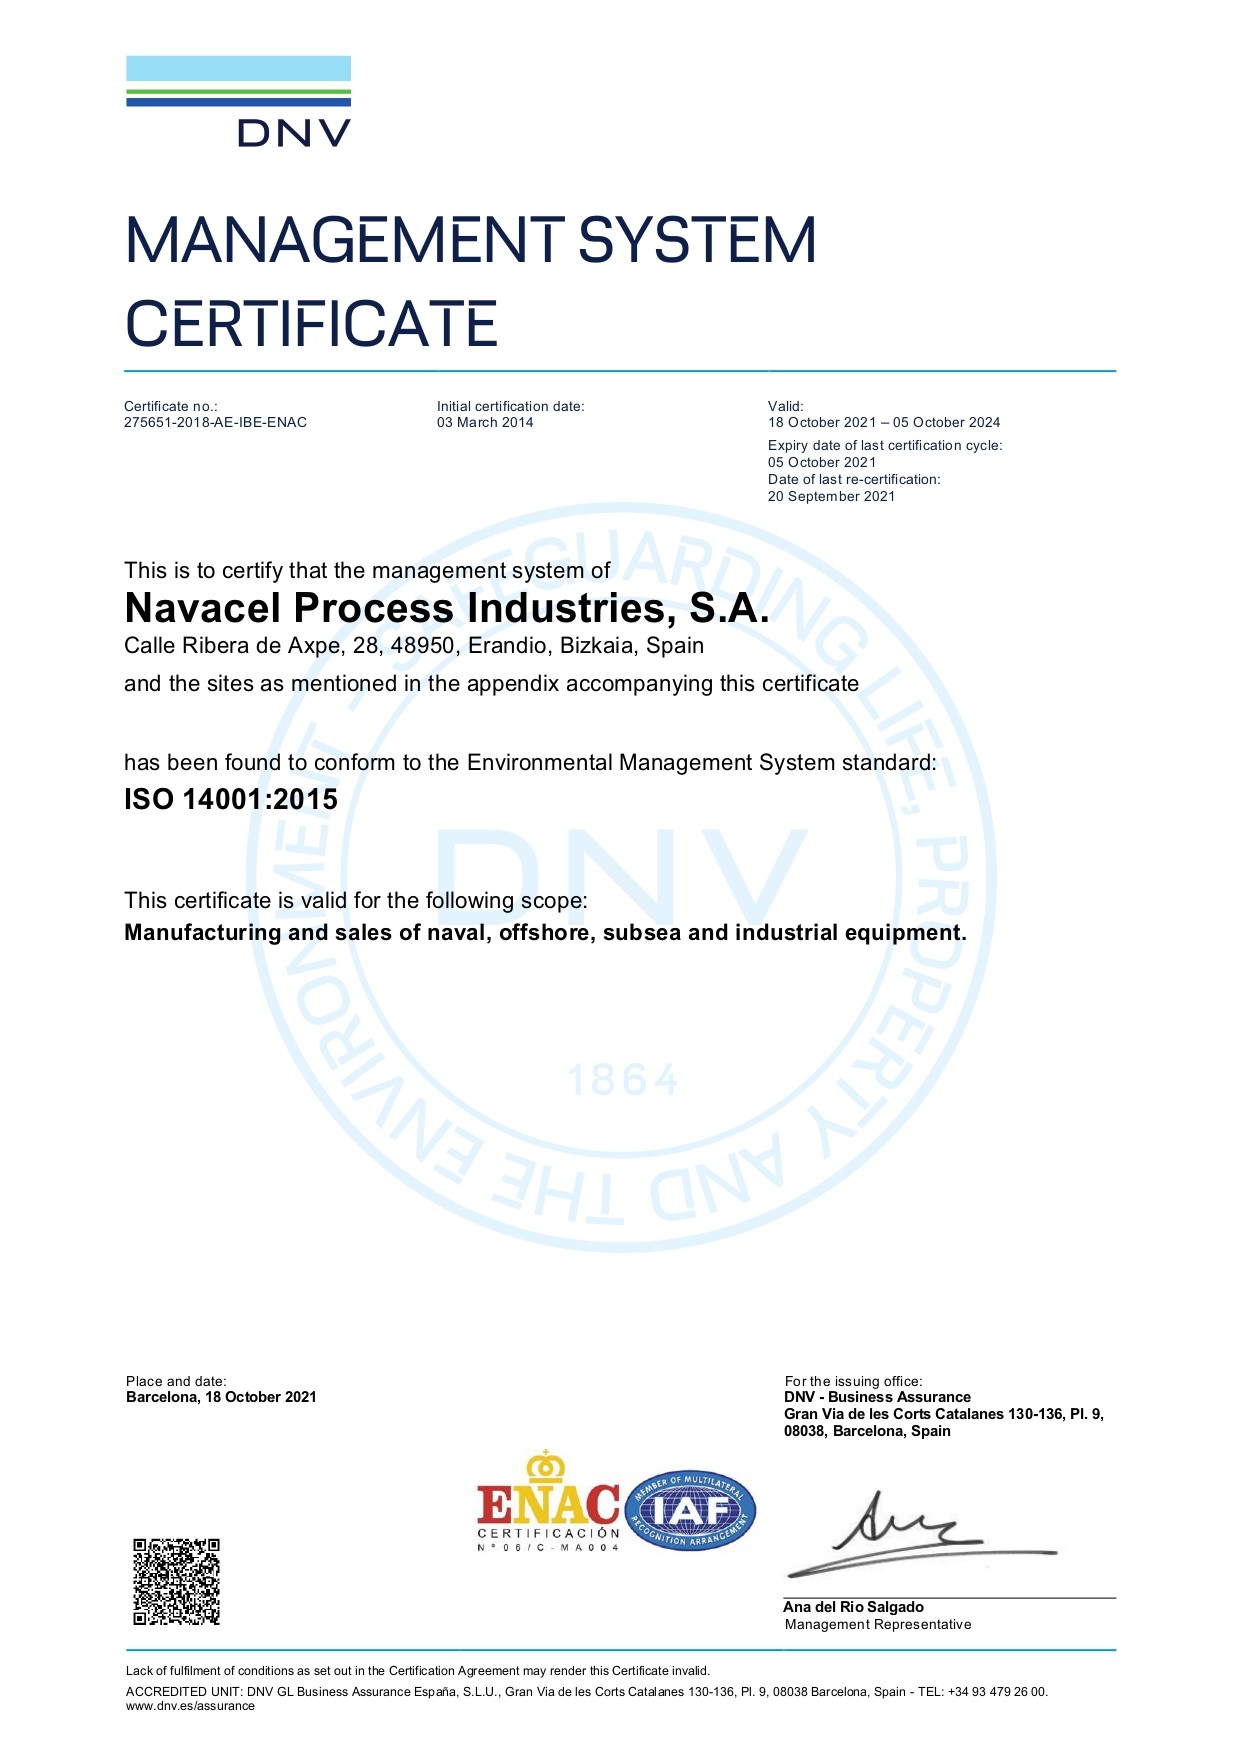 ISO-14001-275651-2018-AE-IBE-ENAC-2-en-US-20211018-20211201184245_page-0001